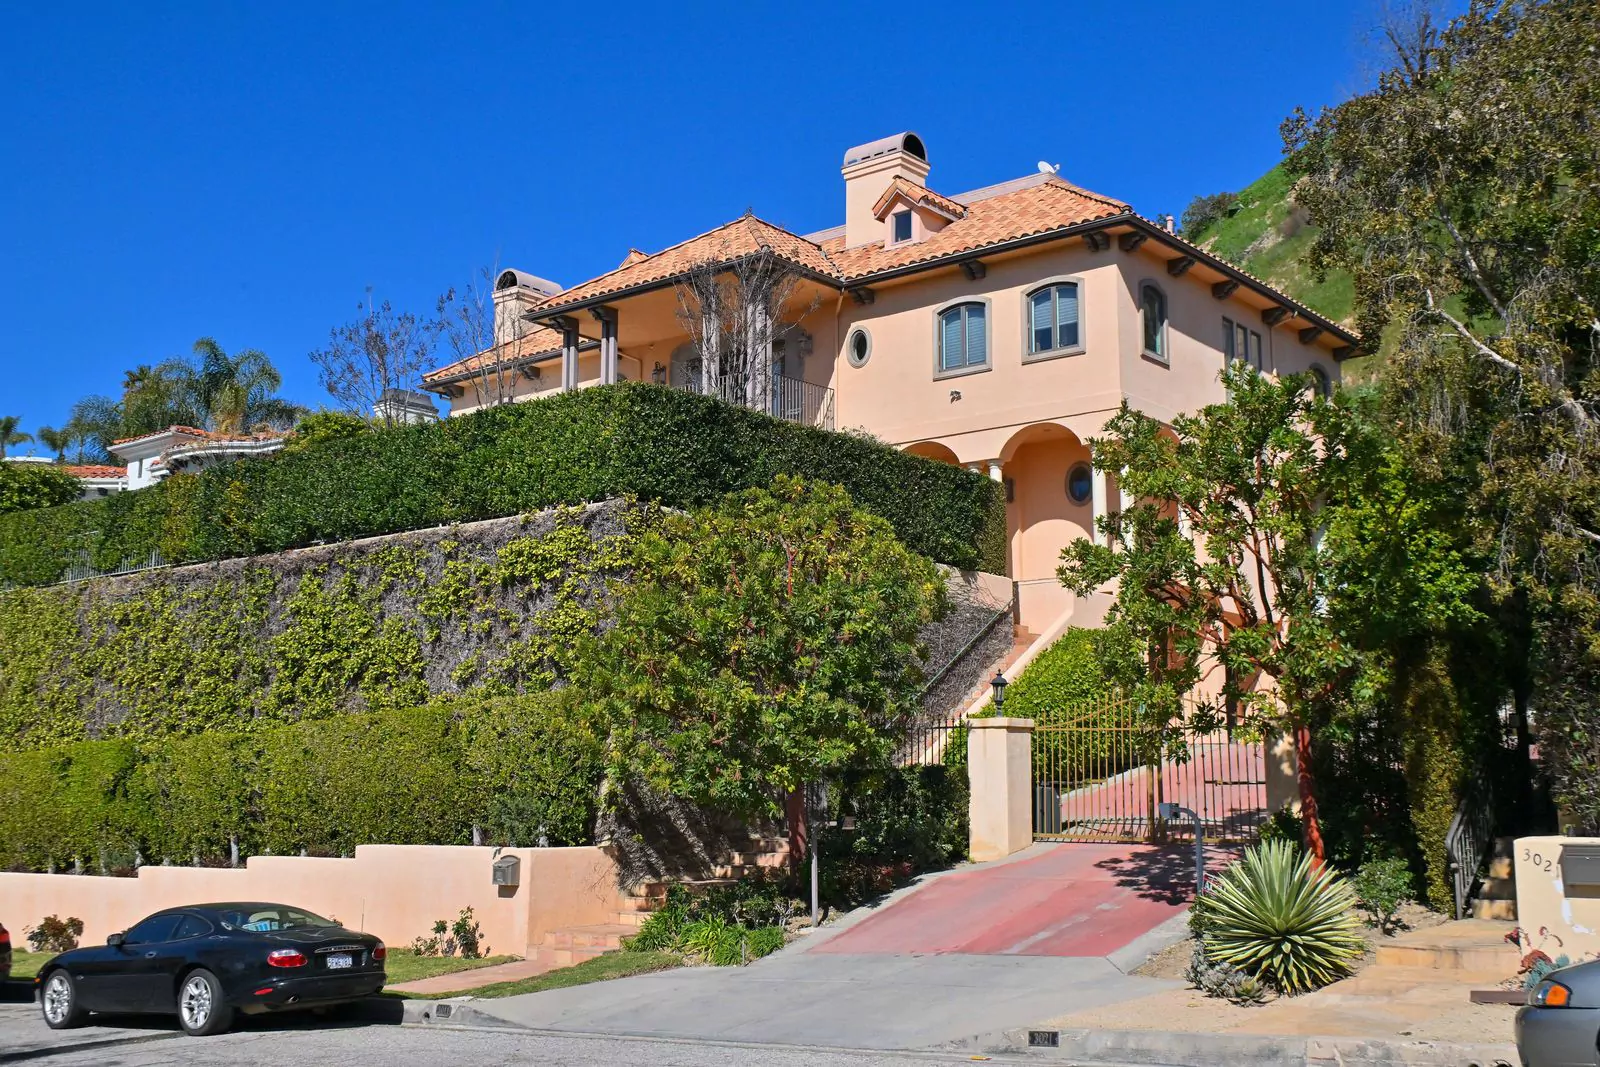 Дом в Лос-Анджелесе, в котором скончалась Рэкел Уэлч в возрасте 82 лет, 15 февраля 2023 г.